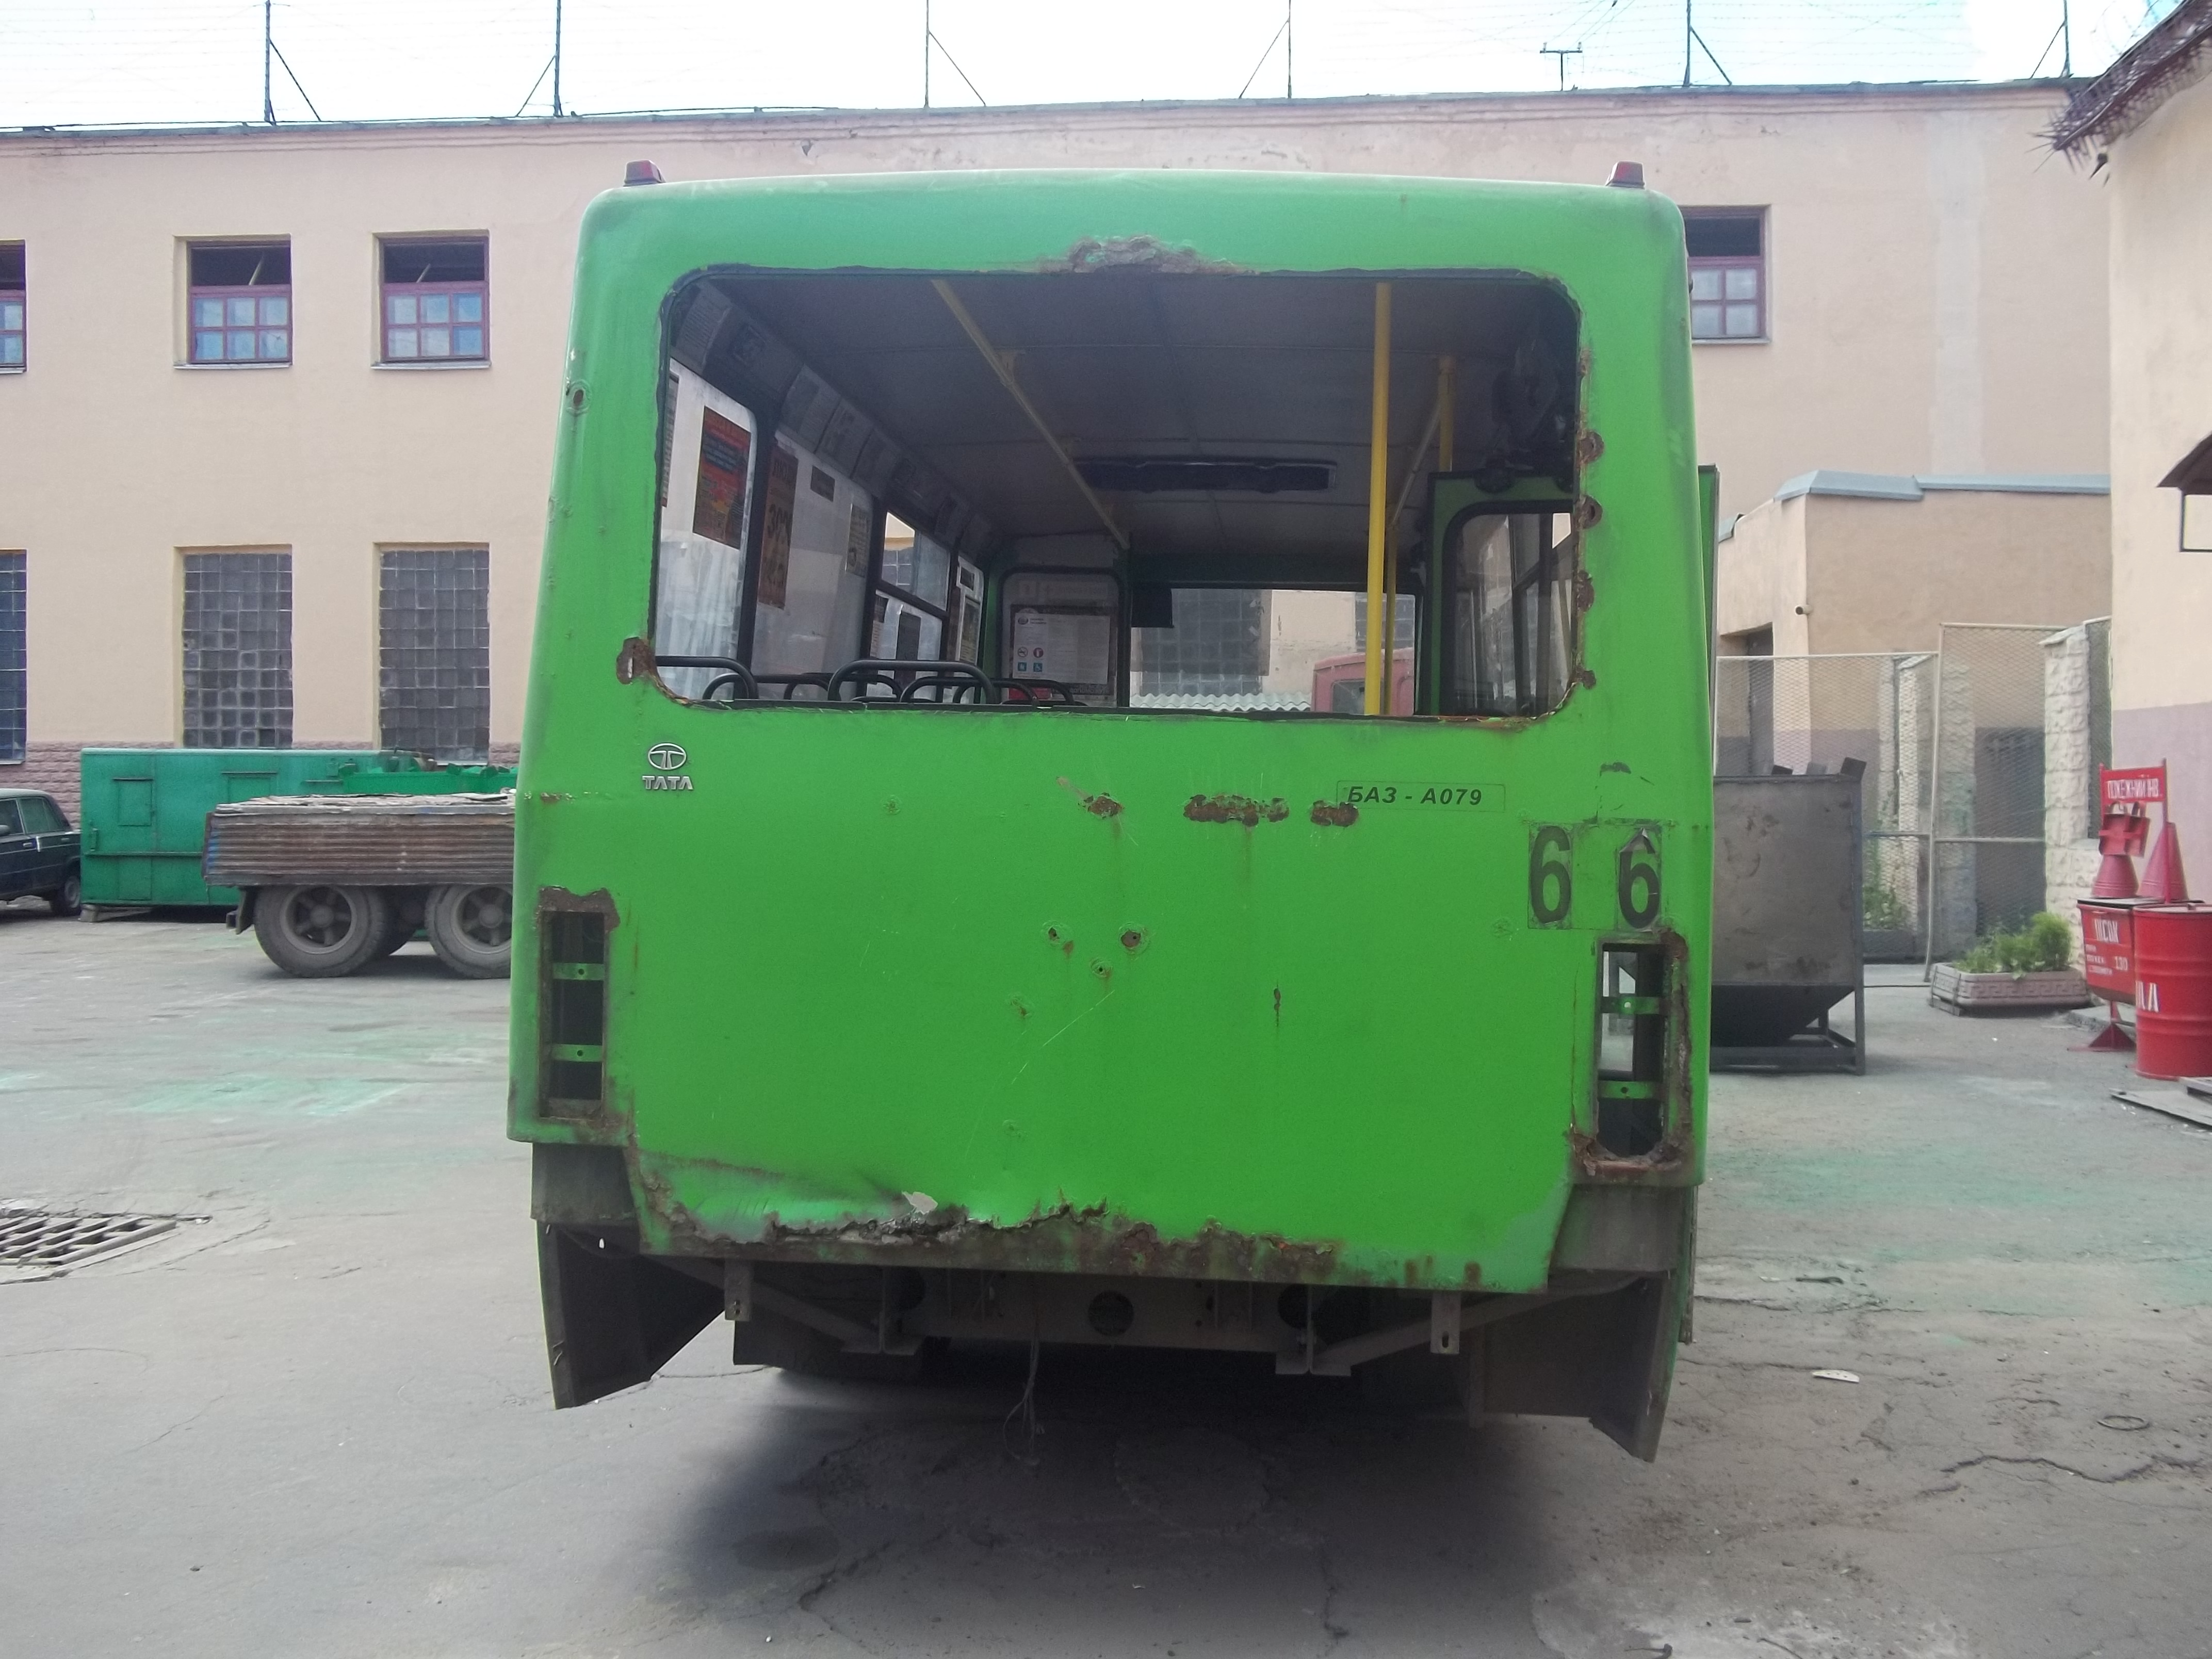 У Харкові ремонт міських автобусів довірили в’язням  - фото 1